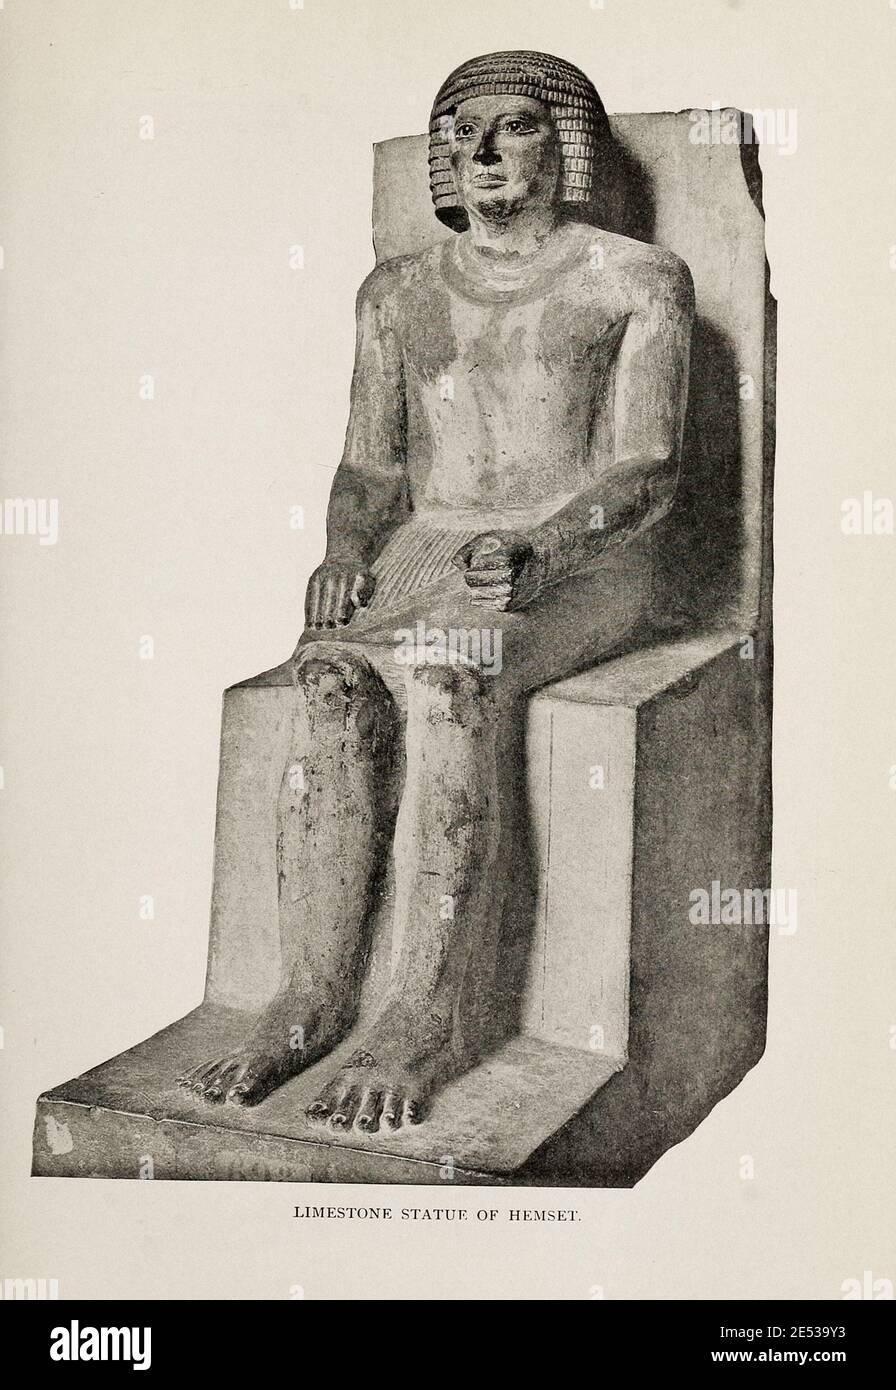 Égypte ancienne. Photo d'archives de la statue calcaire de Hemset. 1912 Banque D'Images